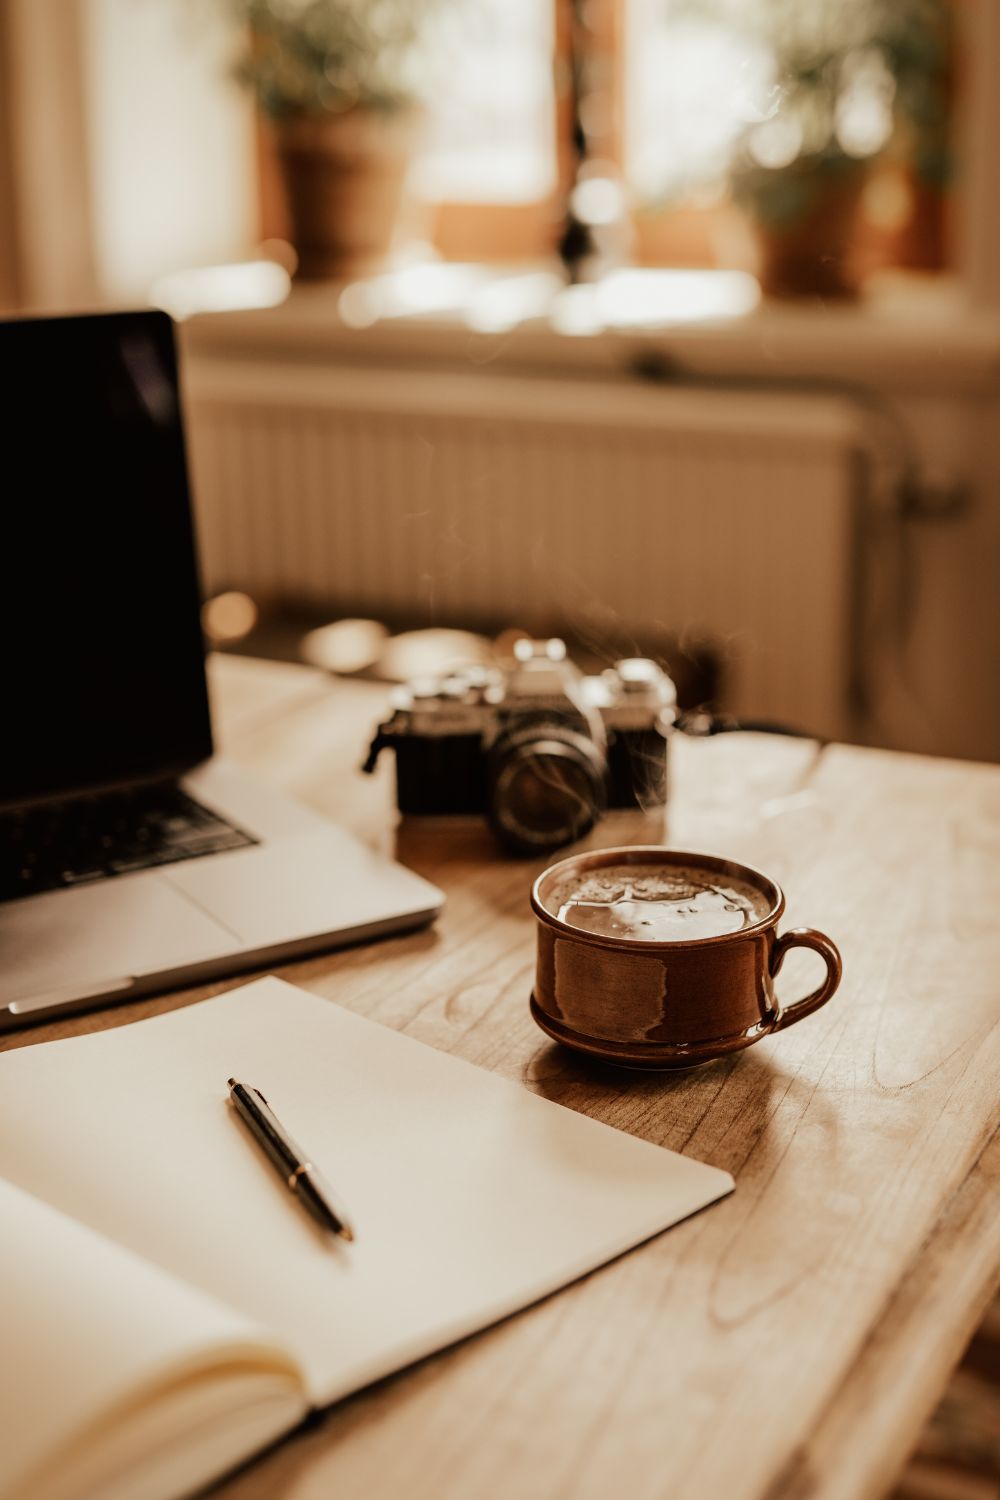 Kaffekopp, analog kamera, anteckningsbok och lap top på ett träbord.